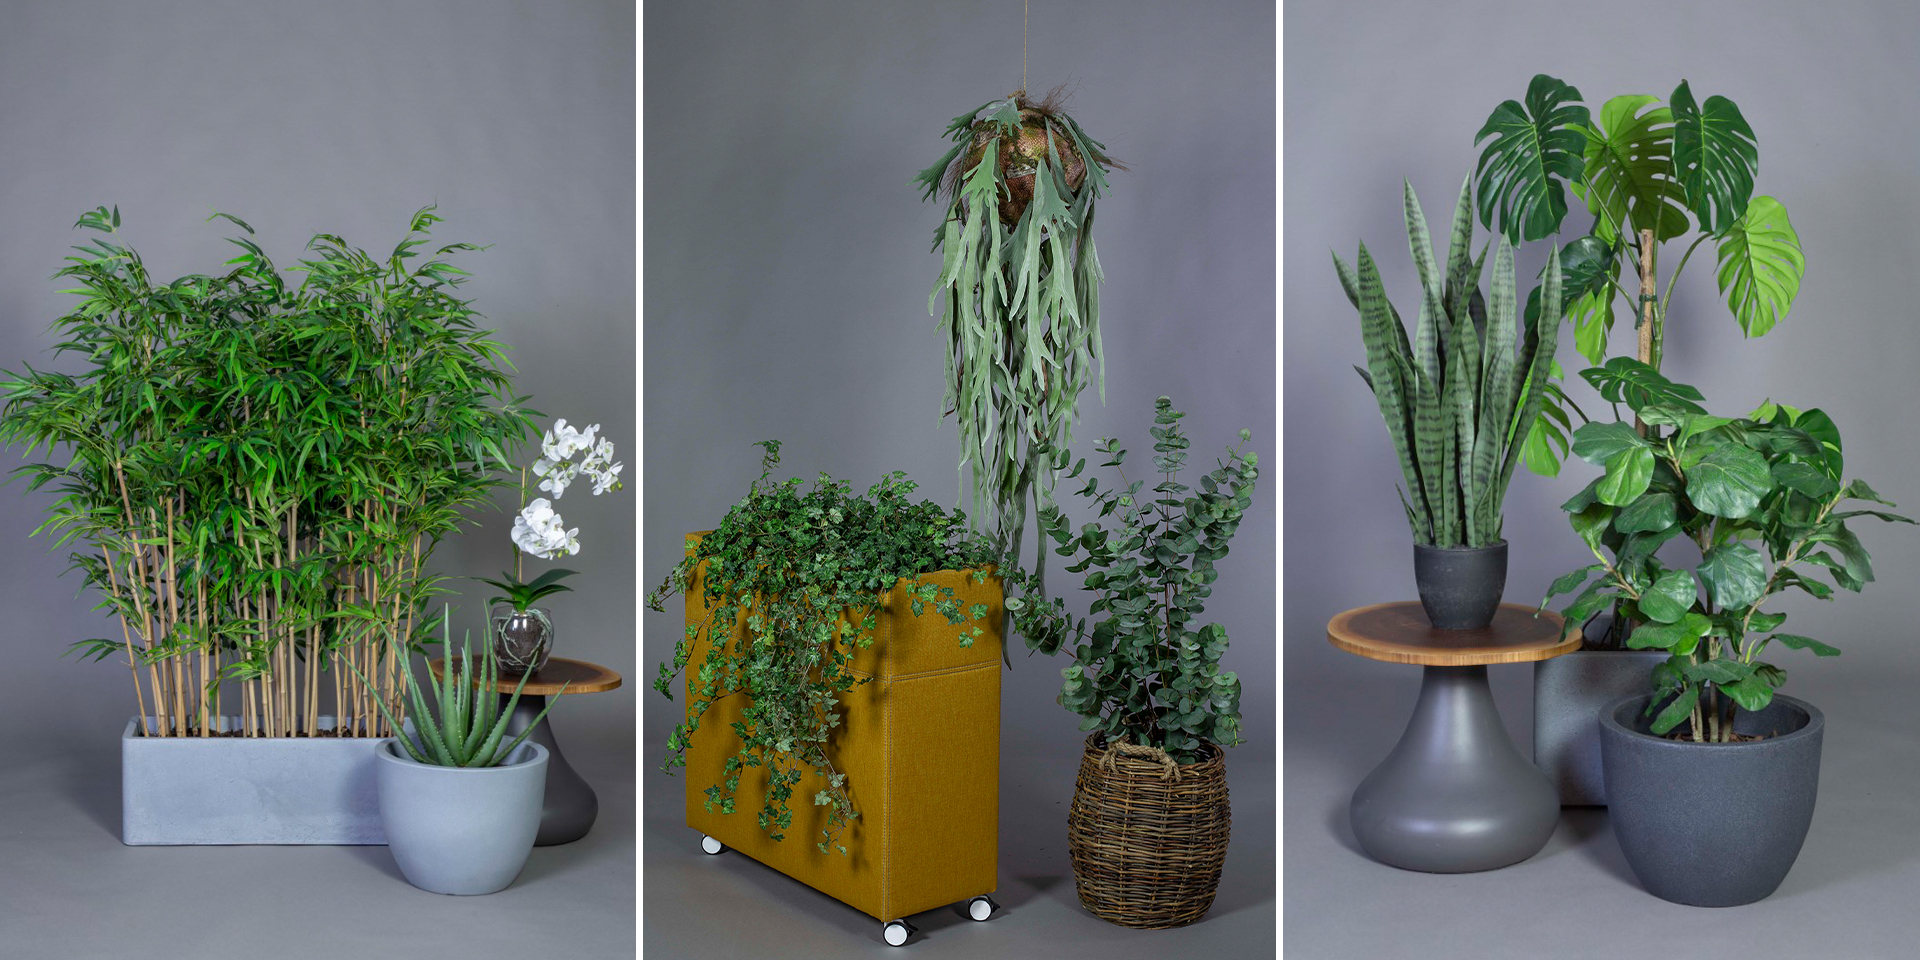 Plantes artificielles de Götessons : Aloe vera en pot, la fougère en corne d'élan suspendue, le paillage en écorces de pin et le ficus lyrata.